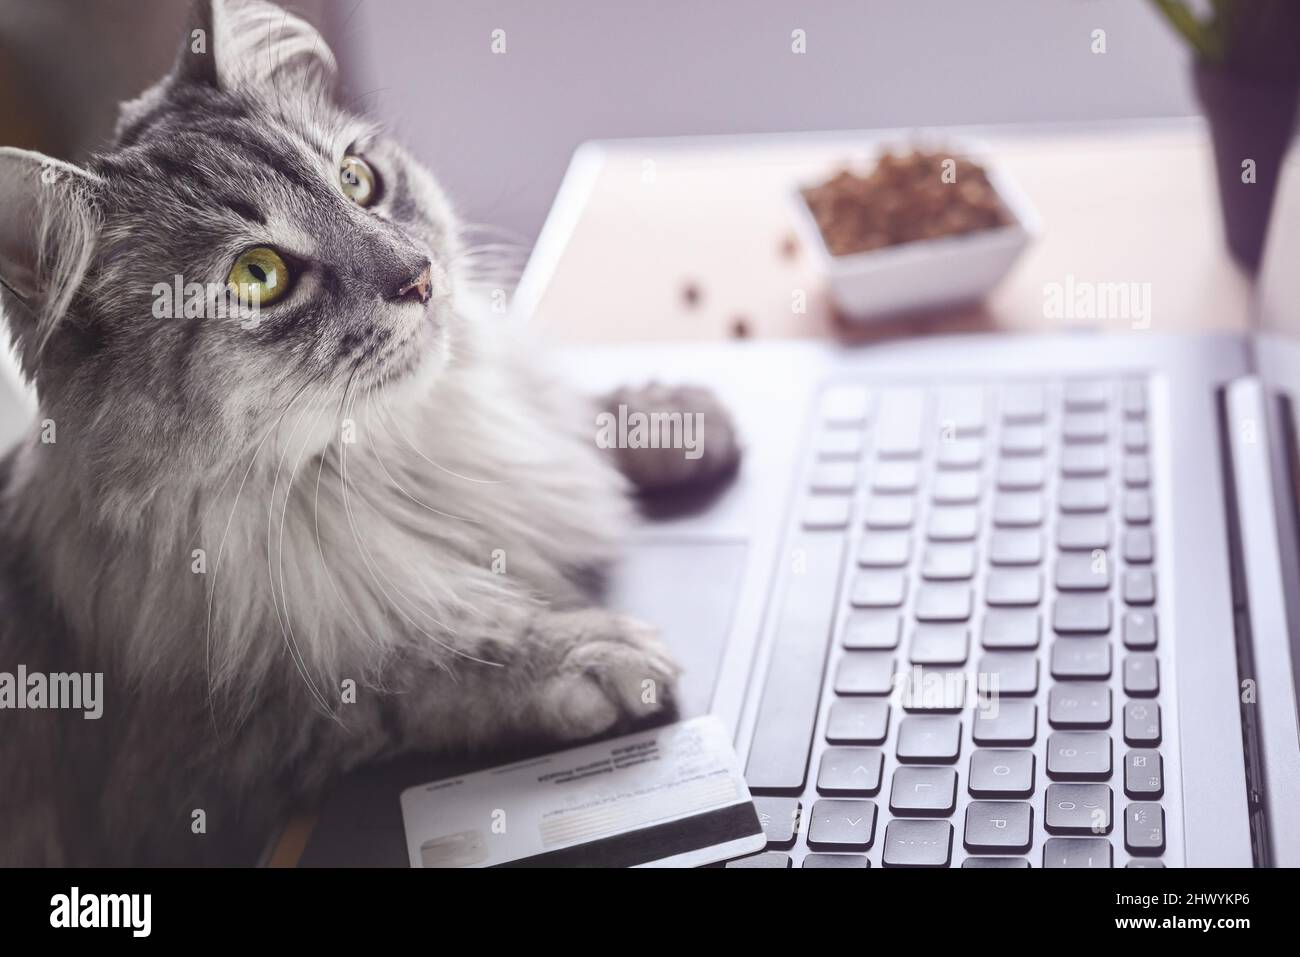 Un chat gris travaille sur un ordinateur portable, regarde le moniteur.  Pattes sur le clavier, à côté d'une carte de crédit et de nourriture sèche  pour chats. Le chat commande des aliments